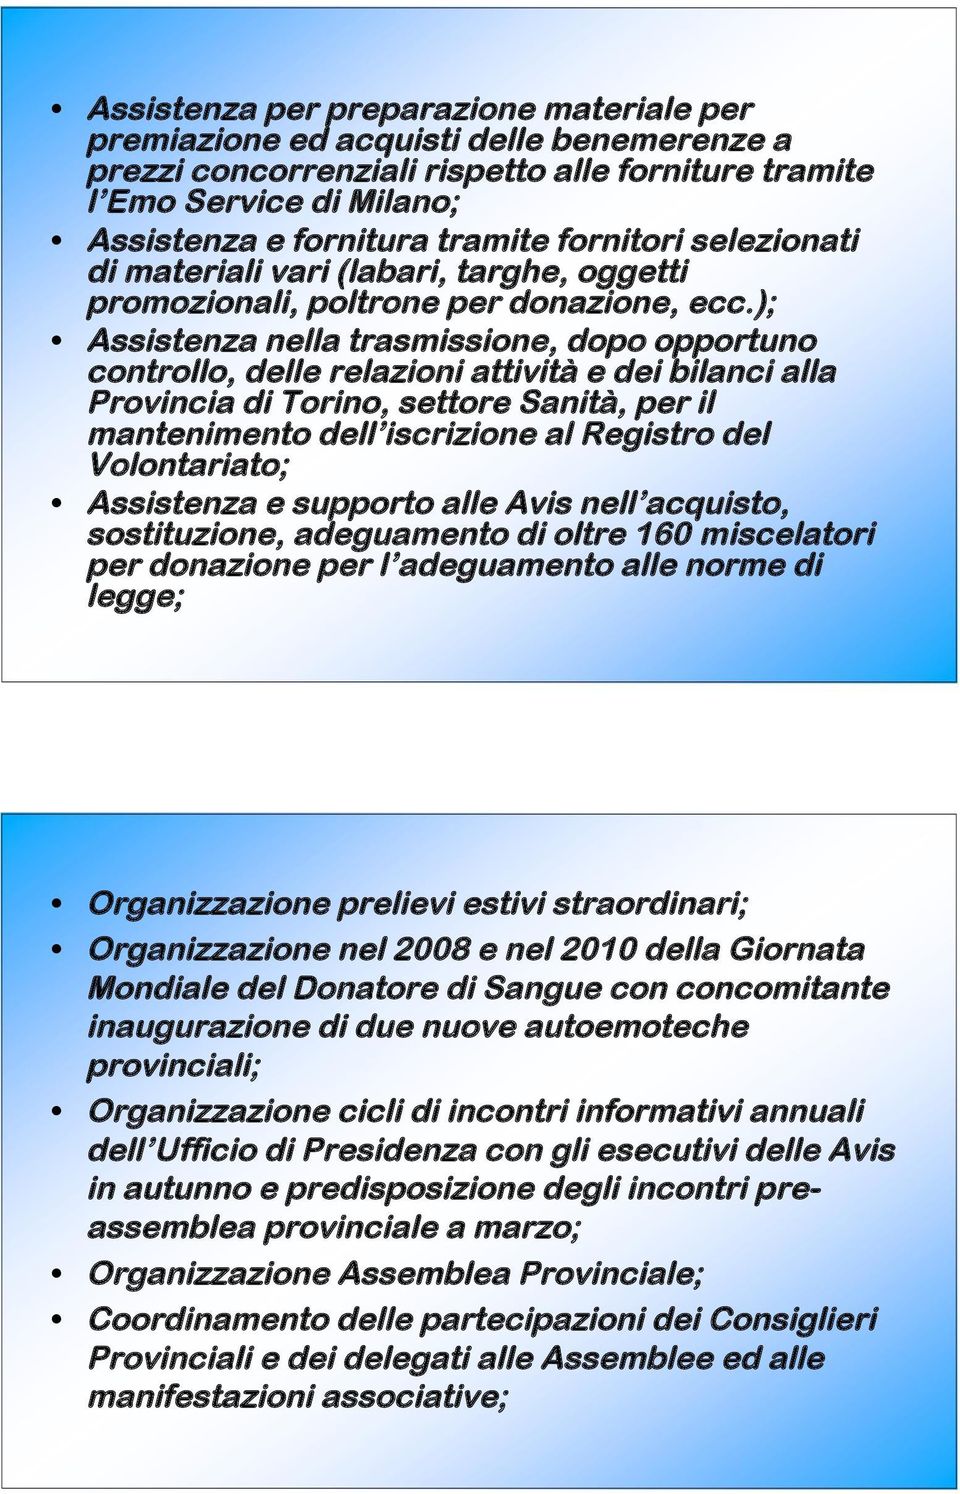 ); Assistenza nella trasmissione, dopo opportuno controllo, delle relazioni attività e dei bilanci alla Provincia di Torino, settore Sanità, per il mantenimento dell iscrizione al Registro del